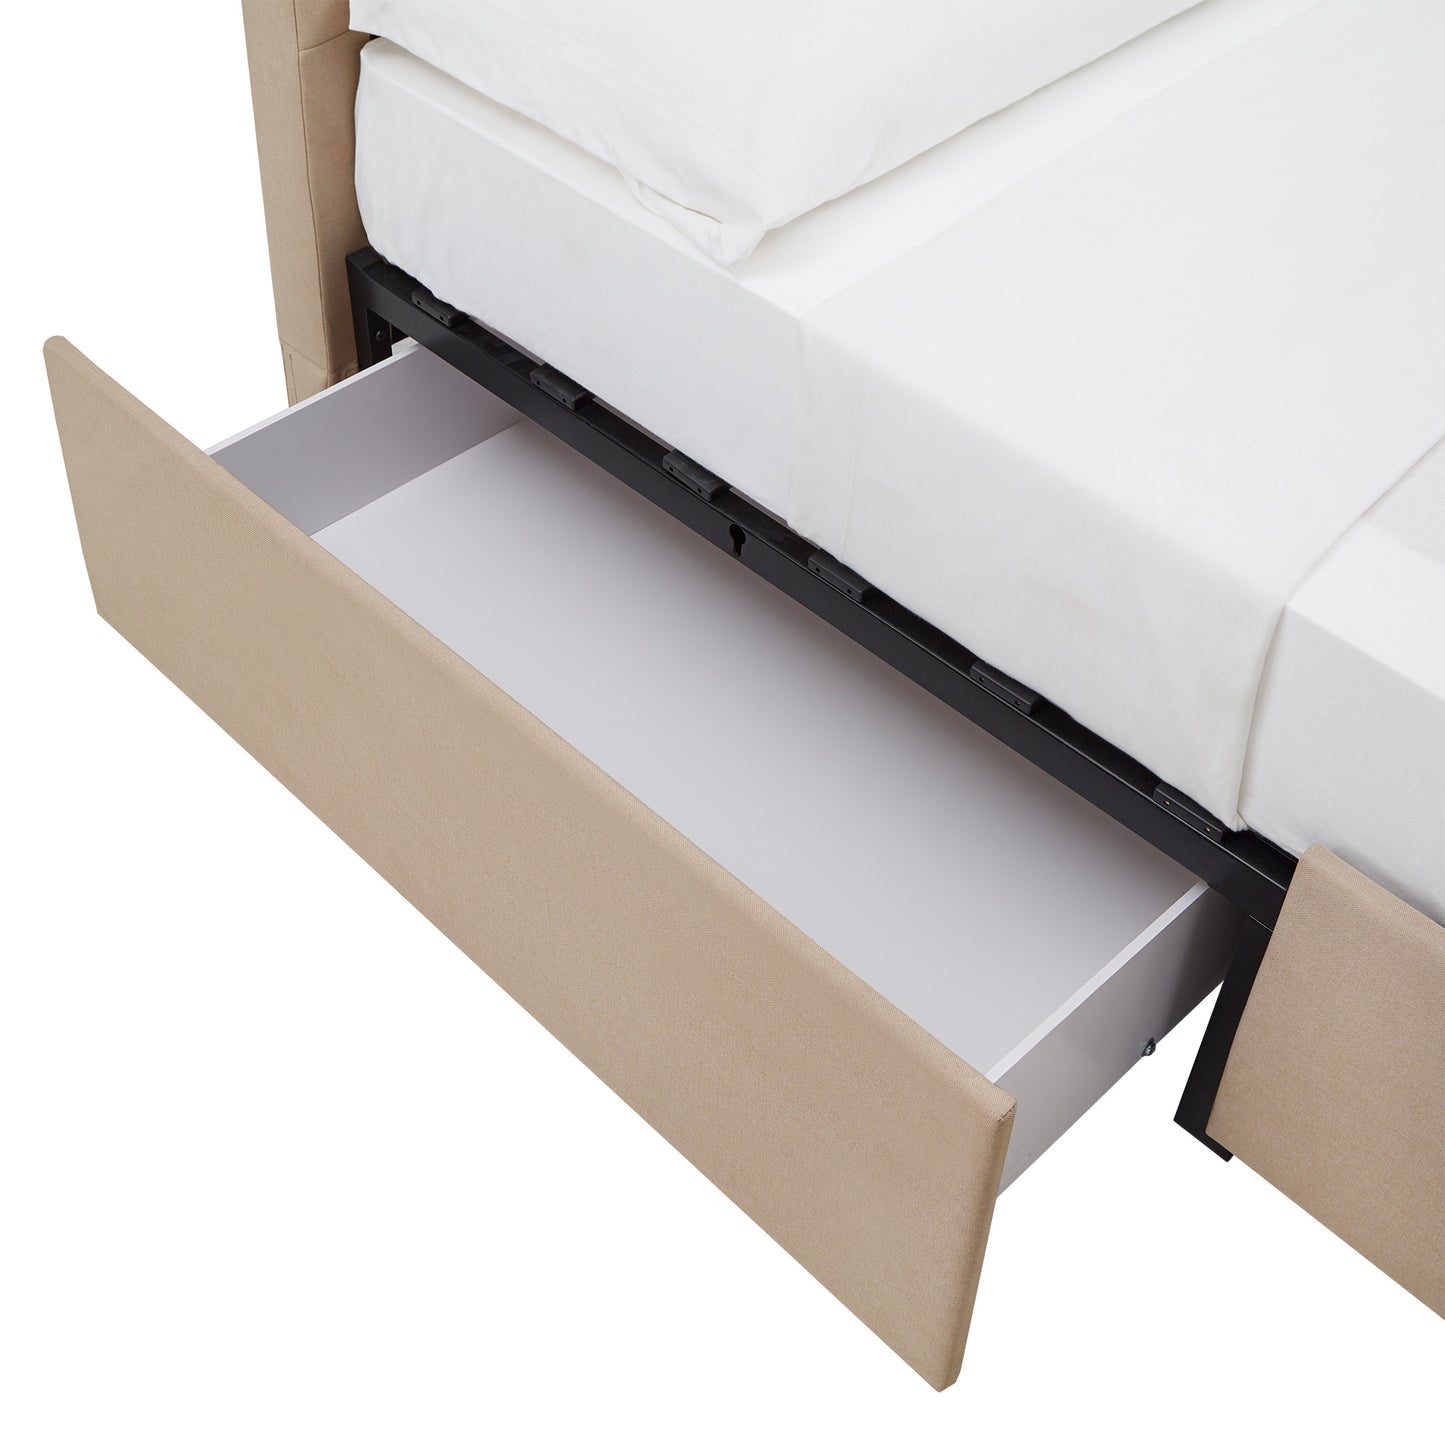 V-Channel Headboard Storage Platform Bed - King Size (King Size)